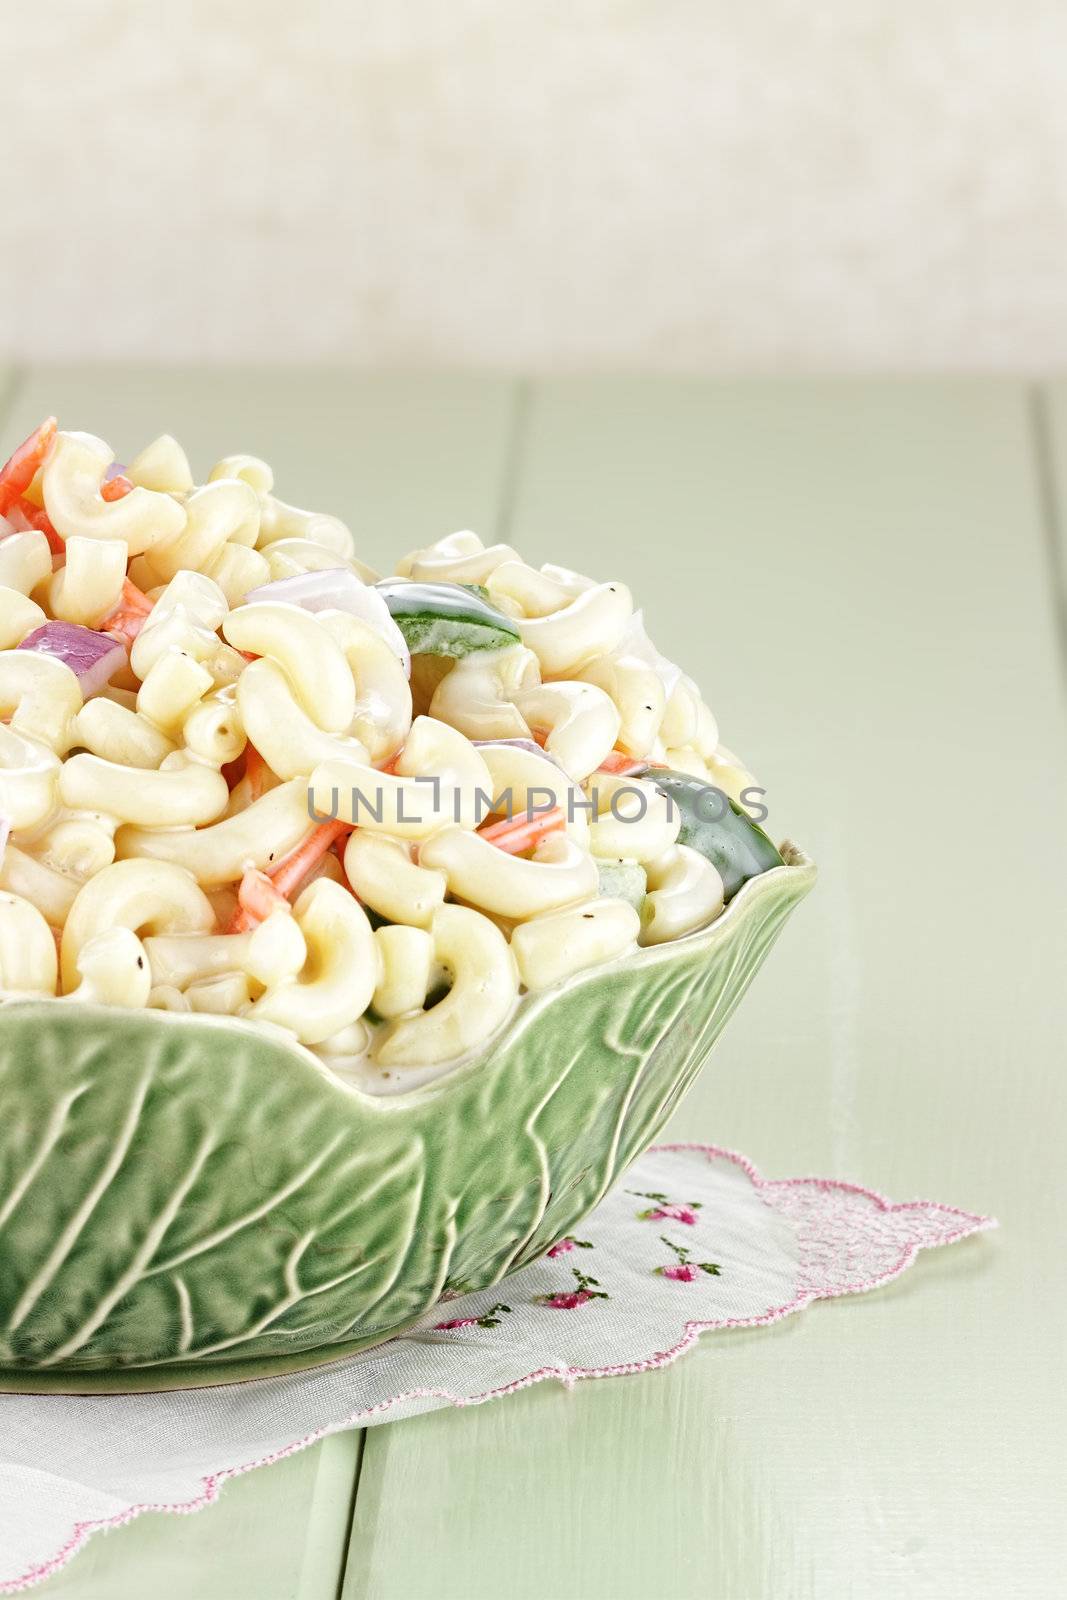 Macaroni Salad by StephanieFrey